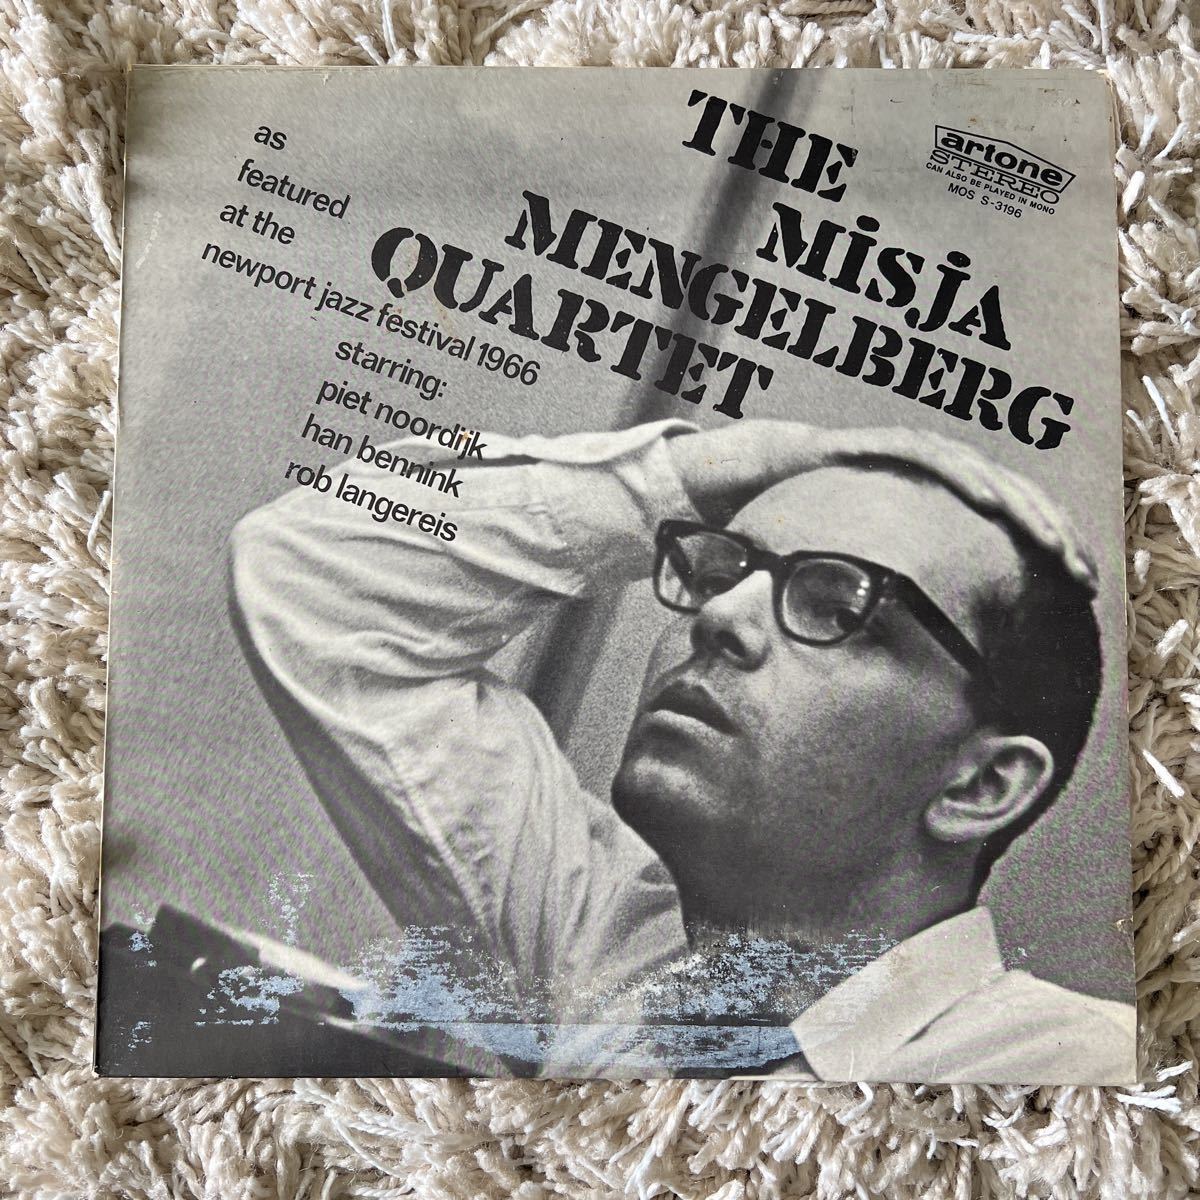 オランダオリジナル　レア盤　misja mengelberg quartet LPレコード ミシャメンゲルベルグ　MOS s3196_画像1